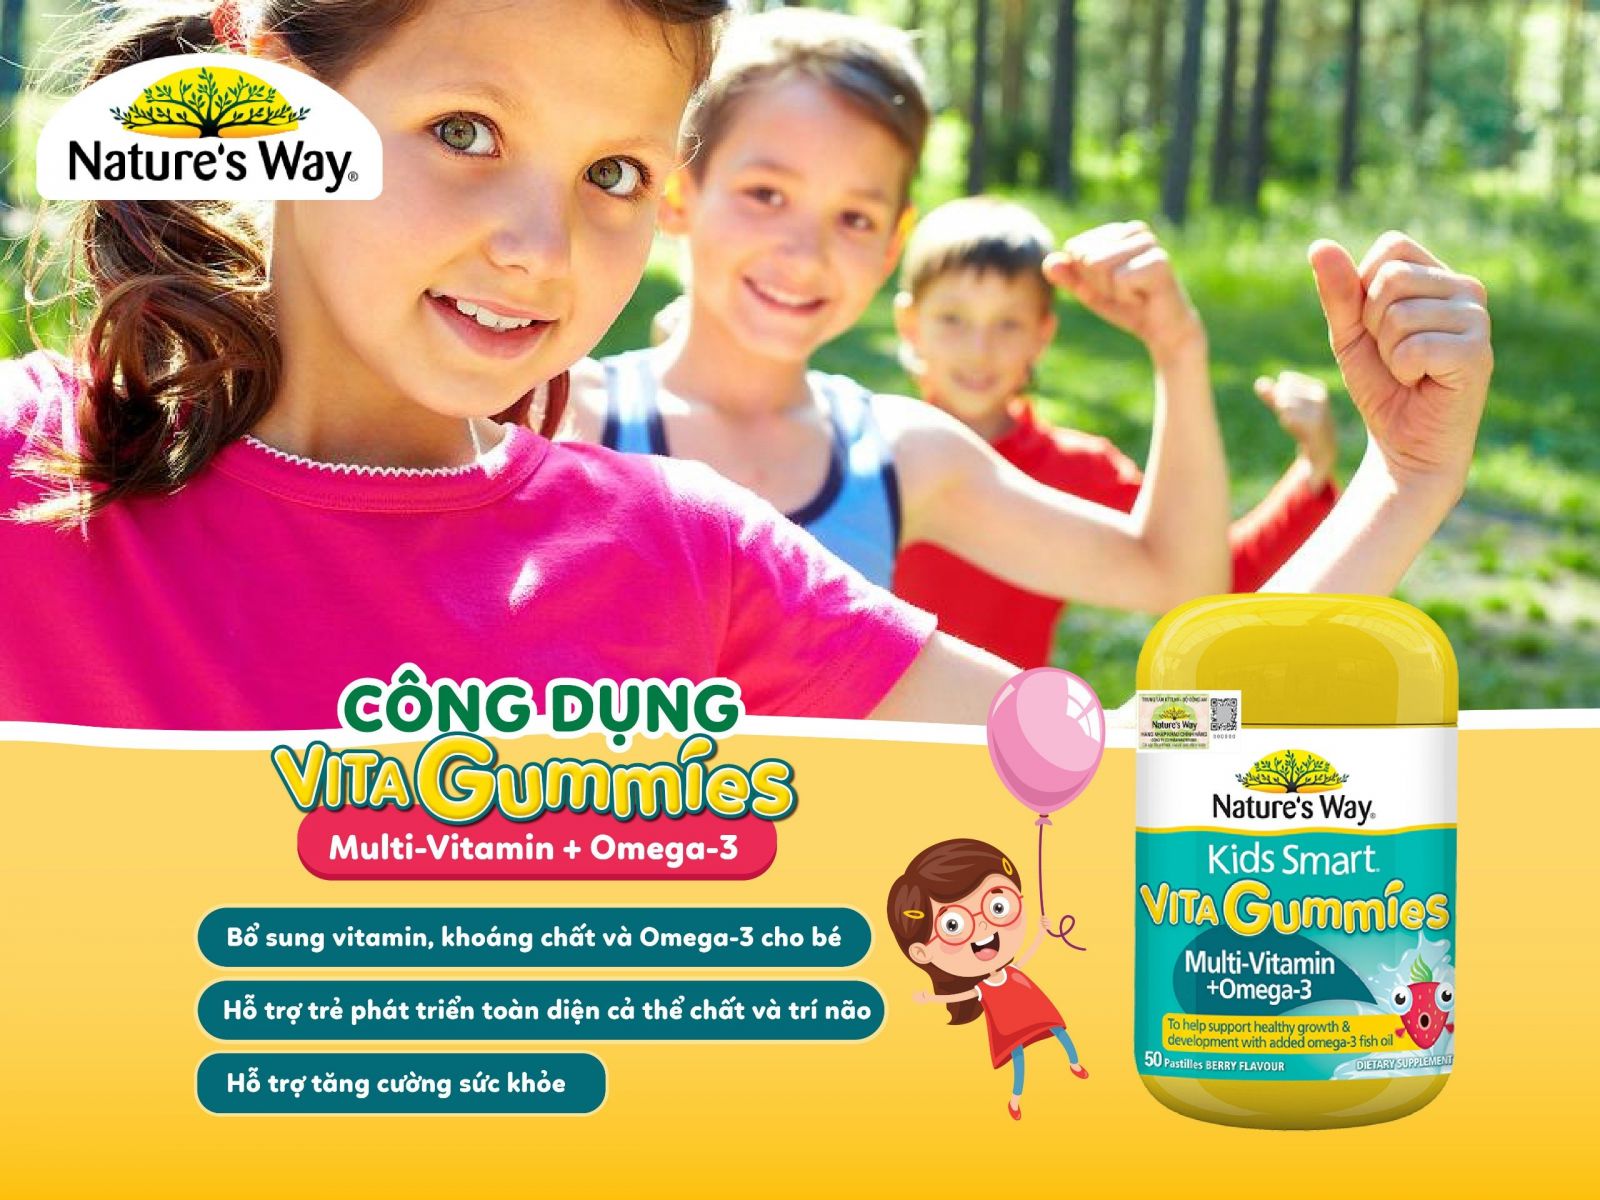 Nature’s Way Kids Smart Vita Gummies Multi-Vitamin + Omega-3 - Bổ sung các vi chất cần thiết và Omega-3